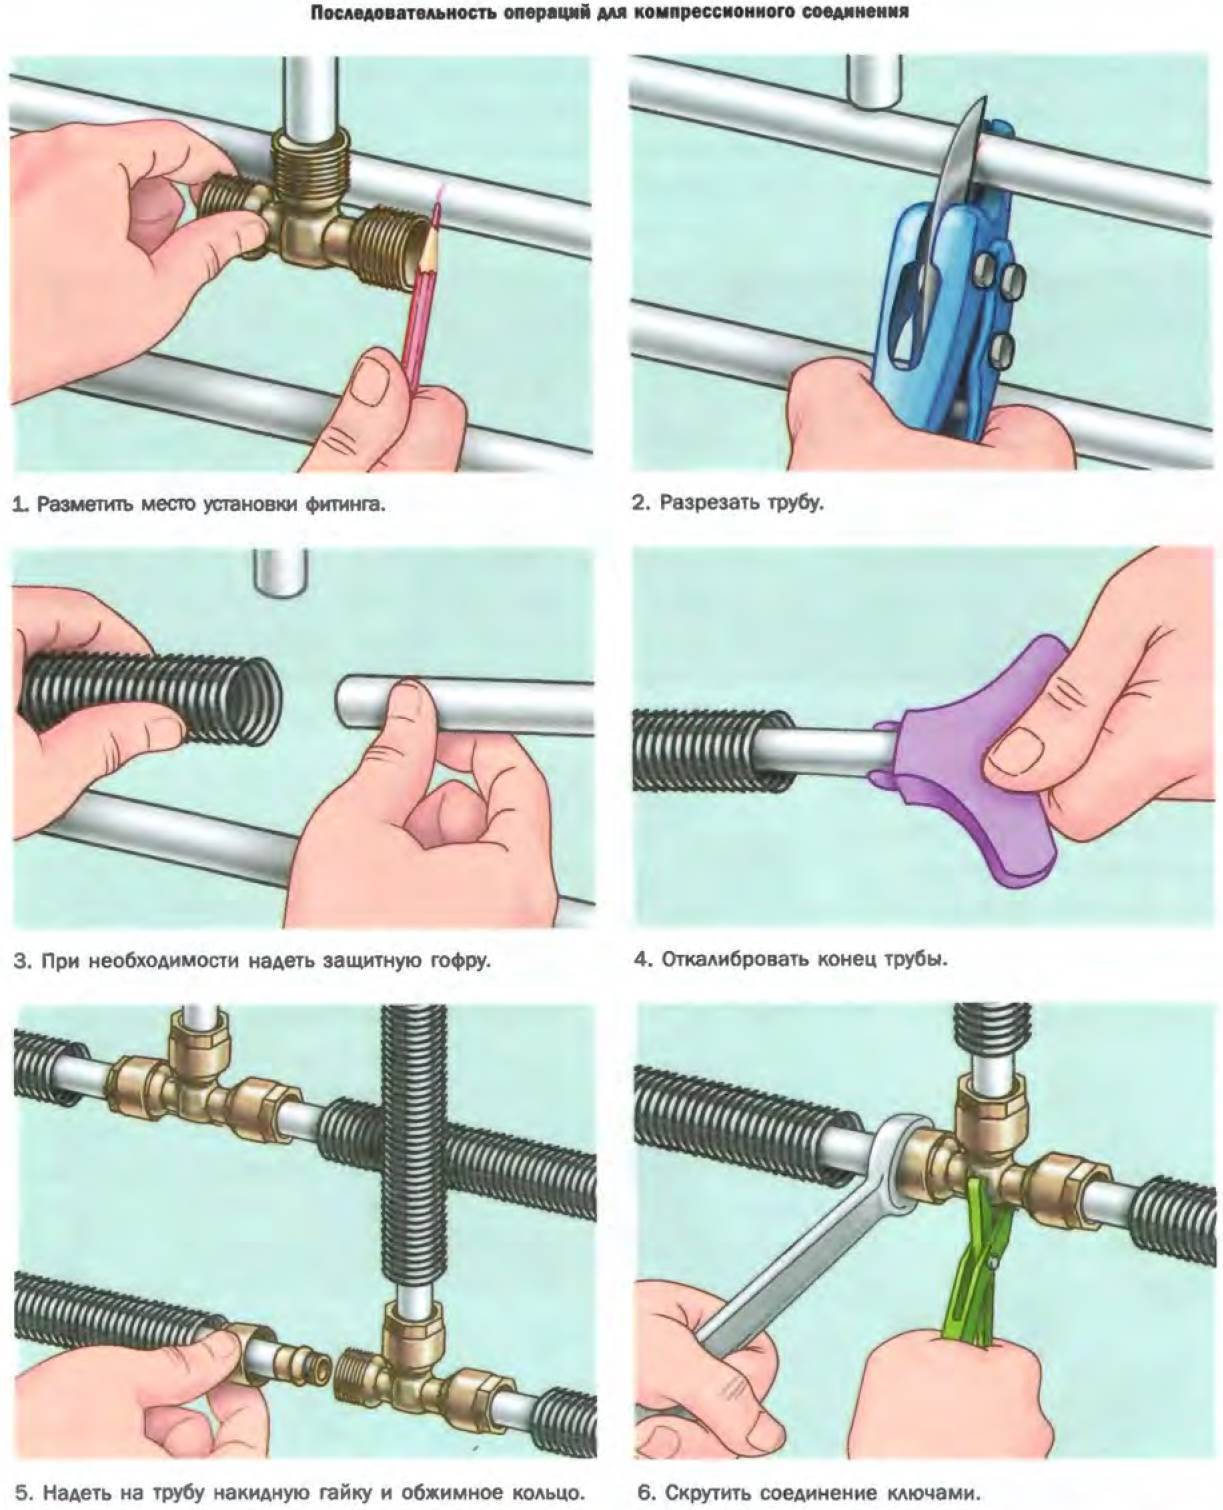 Как соединить пластиковую и металлическую трубу
как соединить пластиковую и металлическую трубу